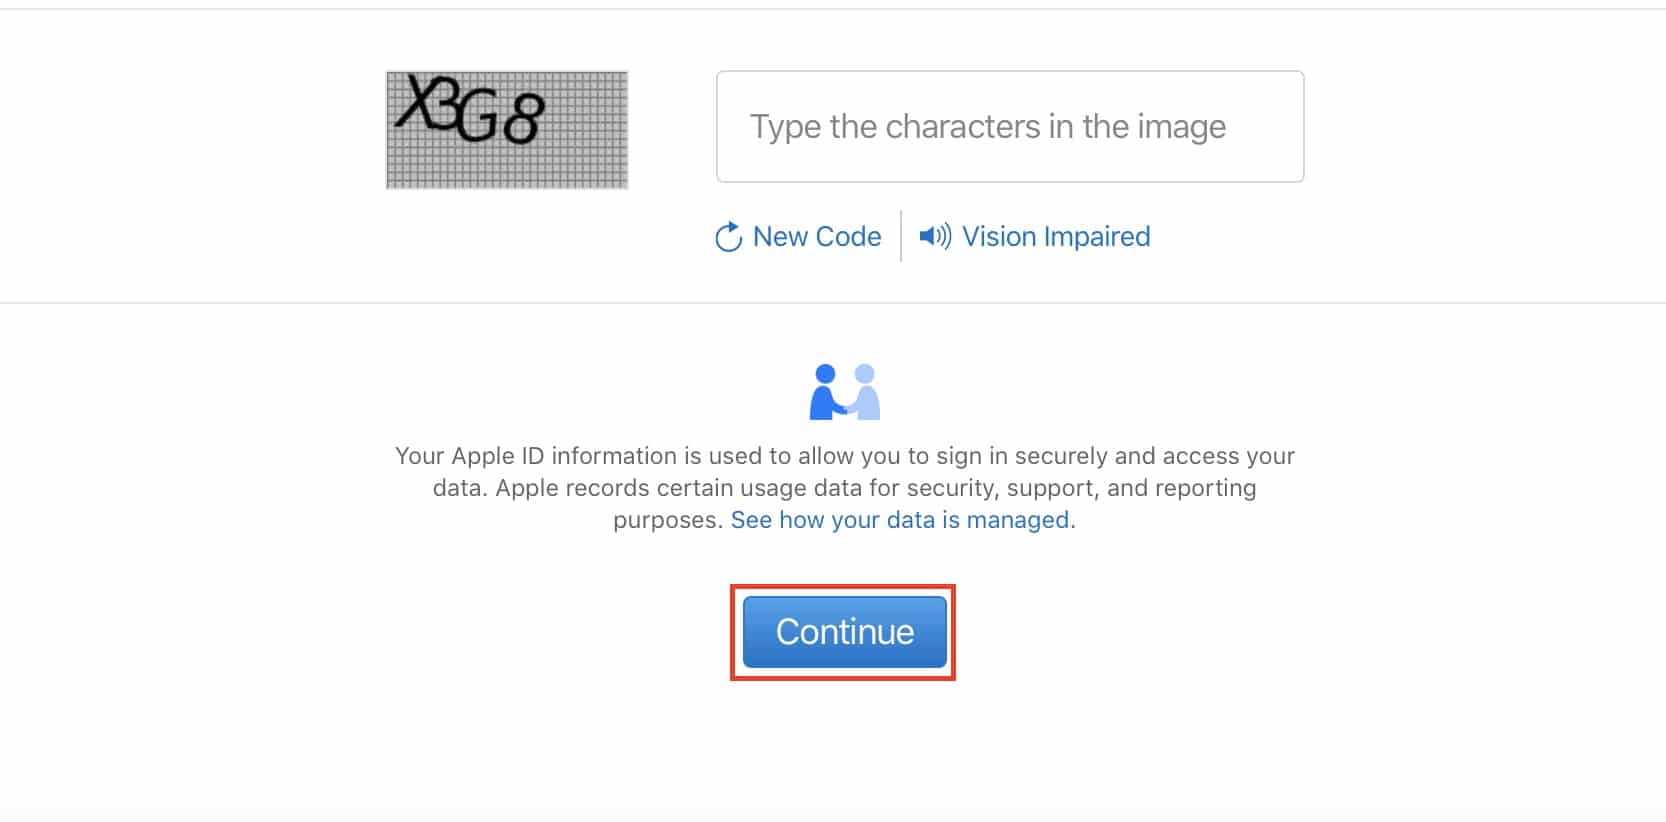 अपने iPhone के लिए एक Apple ID कैसे प्राप्त करें